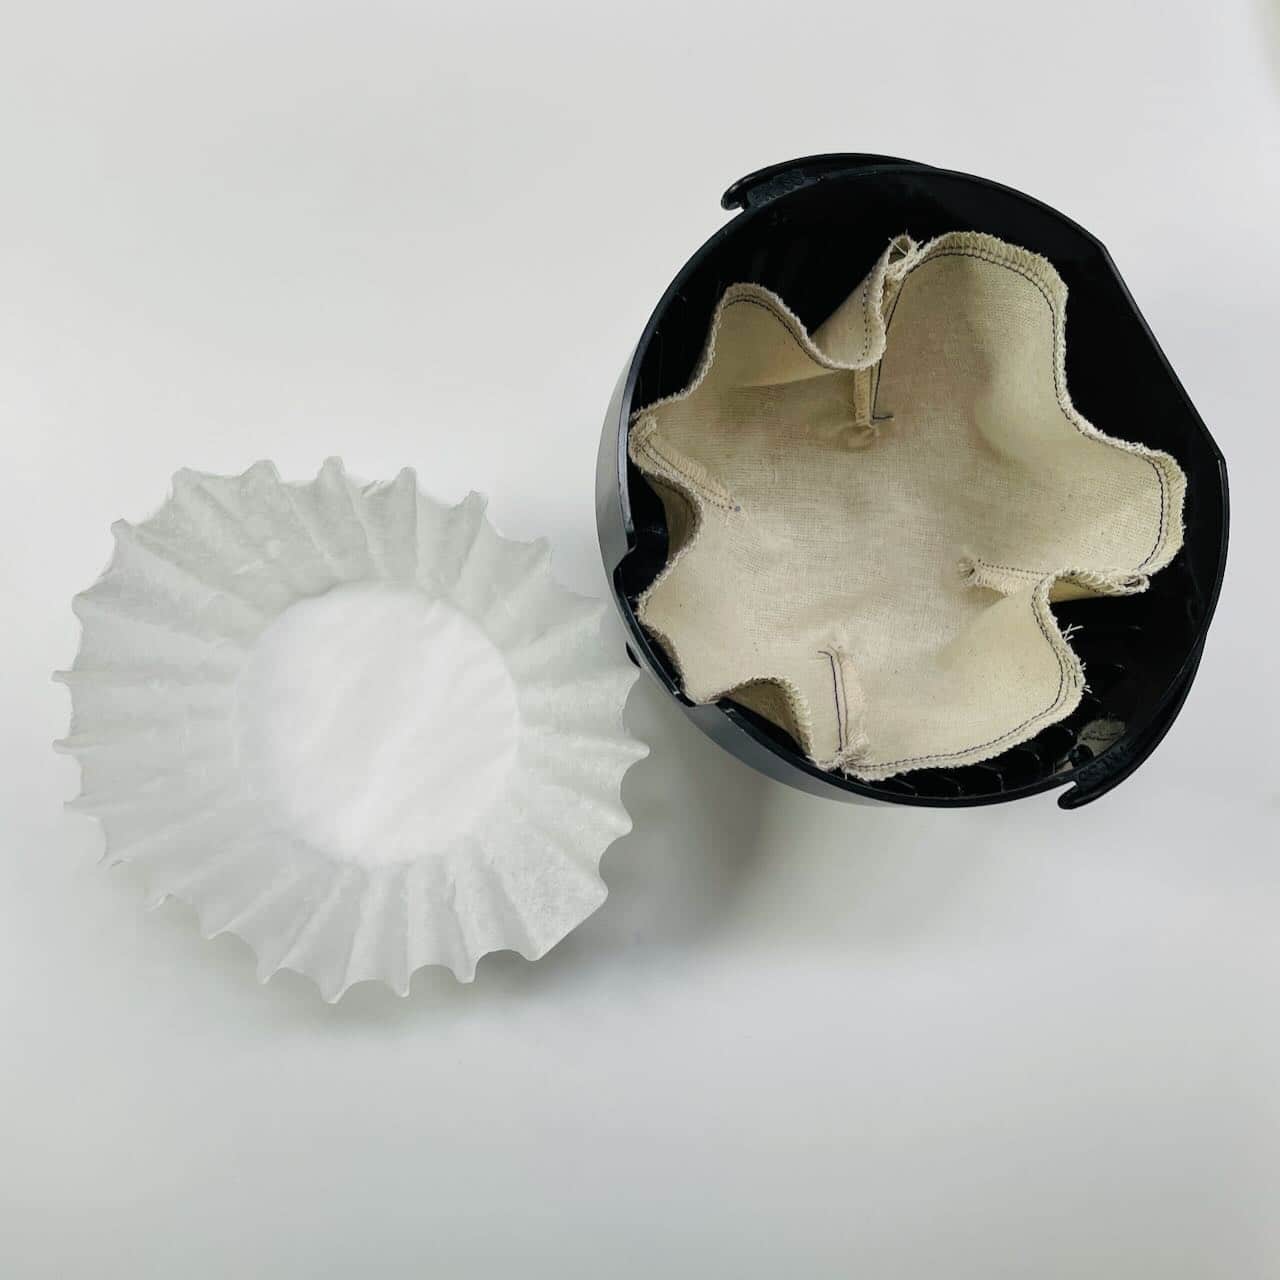 Reusable Muslin Coffee Filter Basket